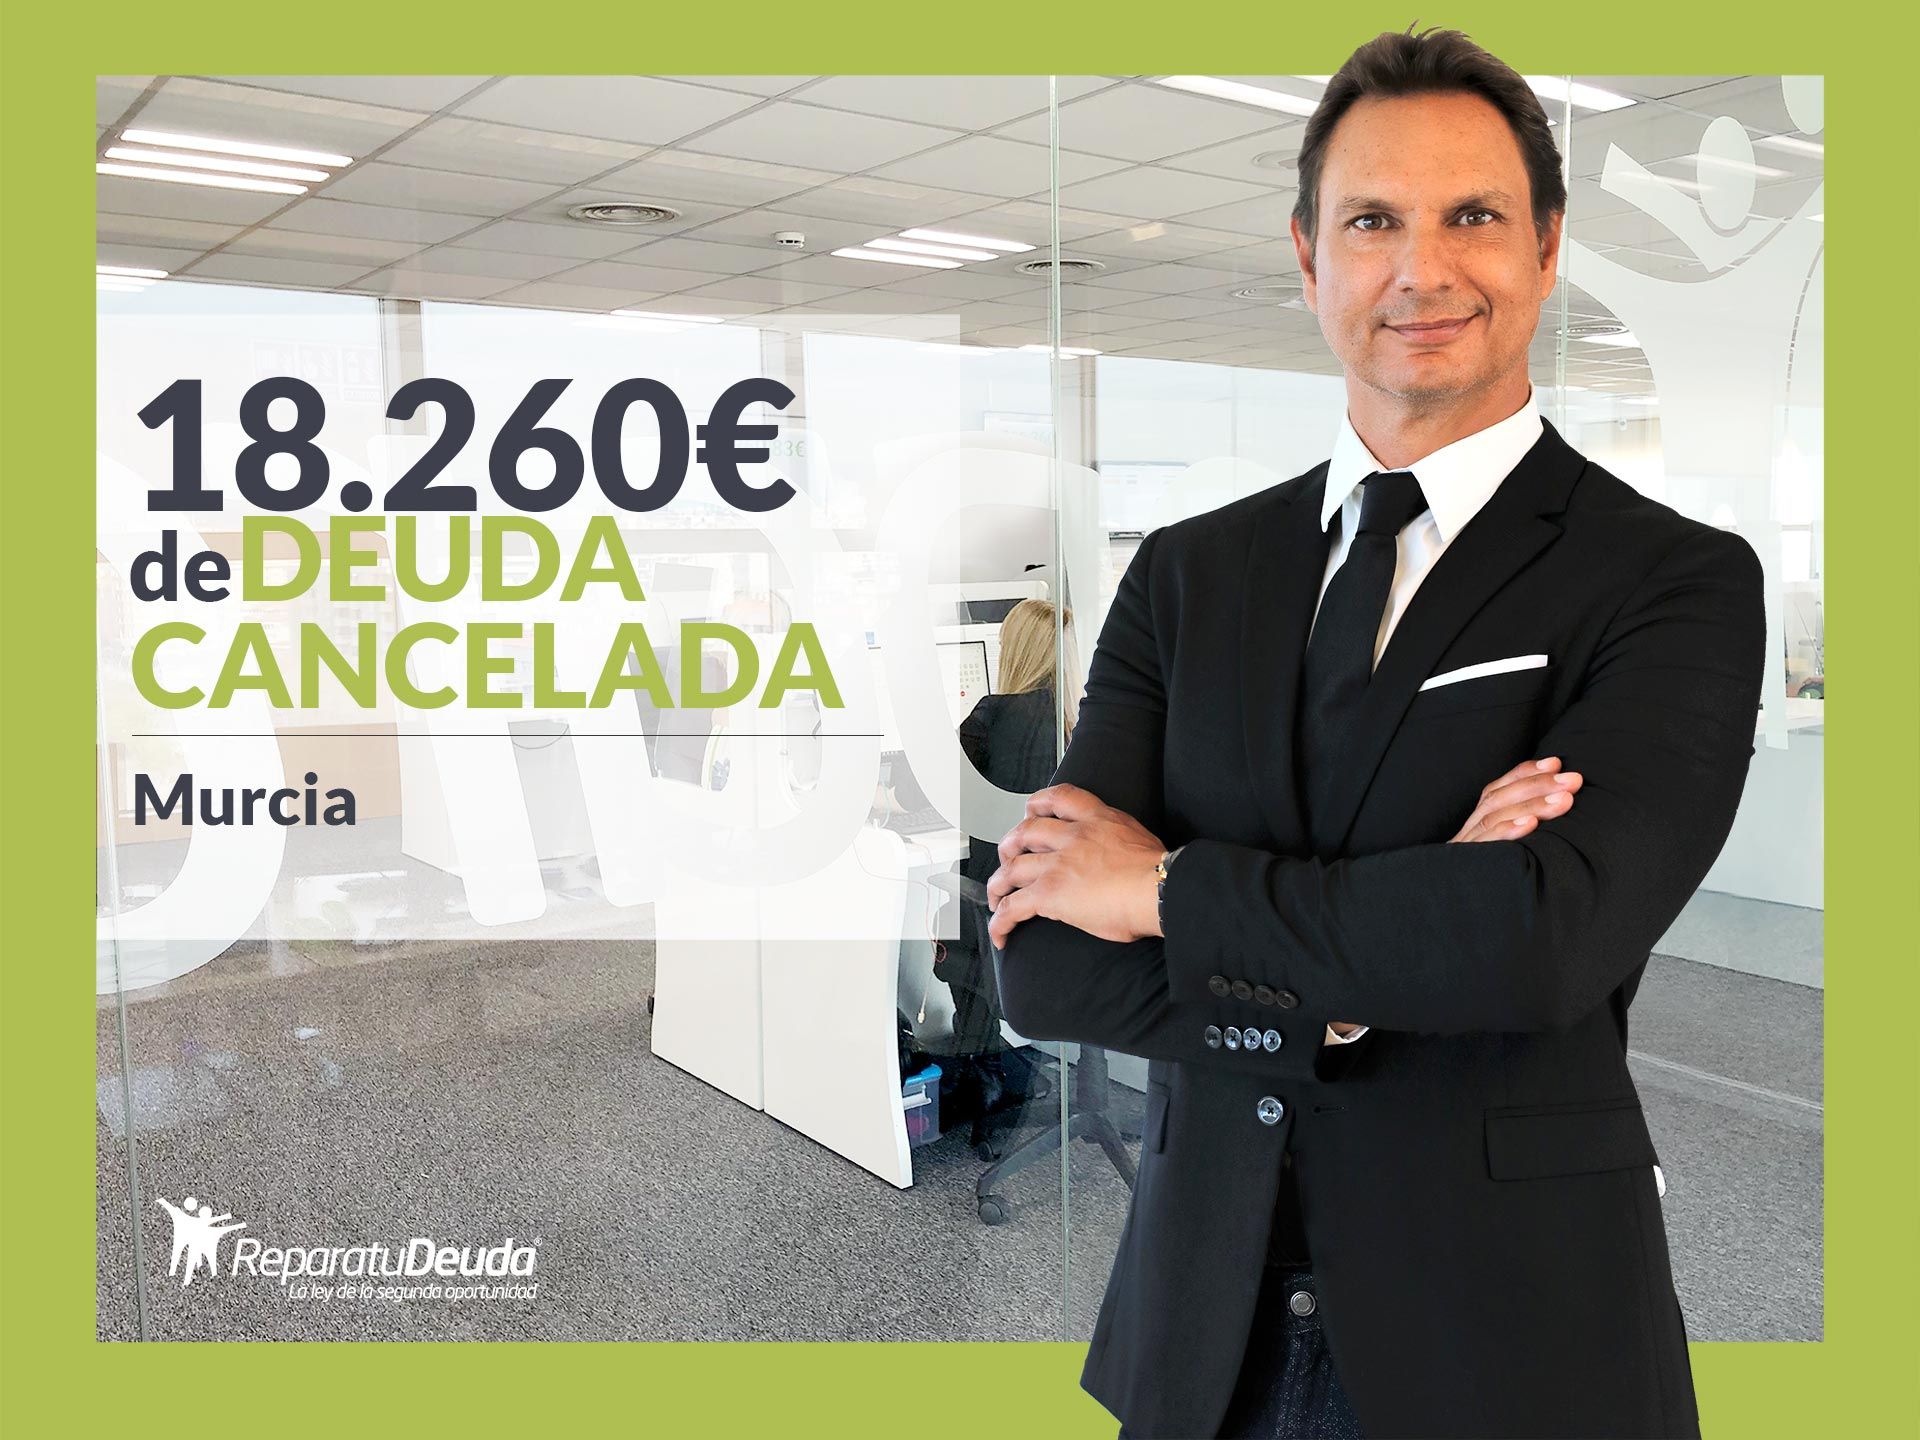 Repara tu Deuda Abogados cancela 18.260? en Murcia con la Ley de Segunda Oportunidad